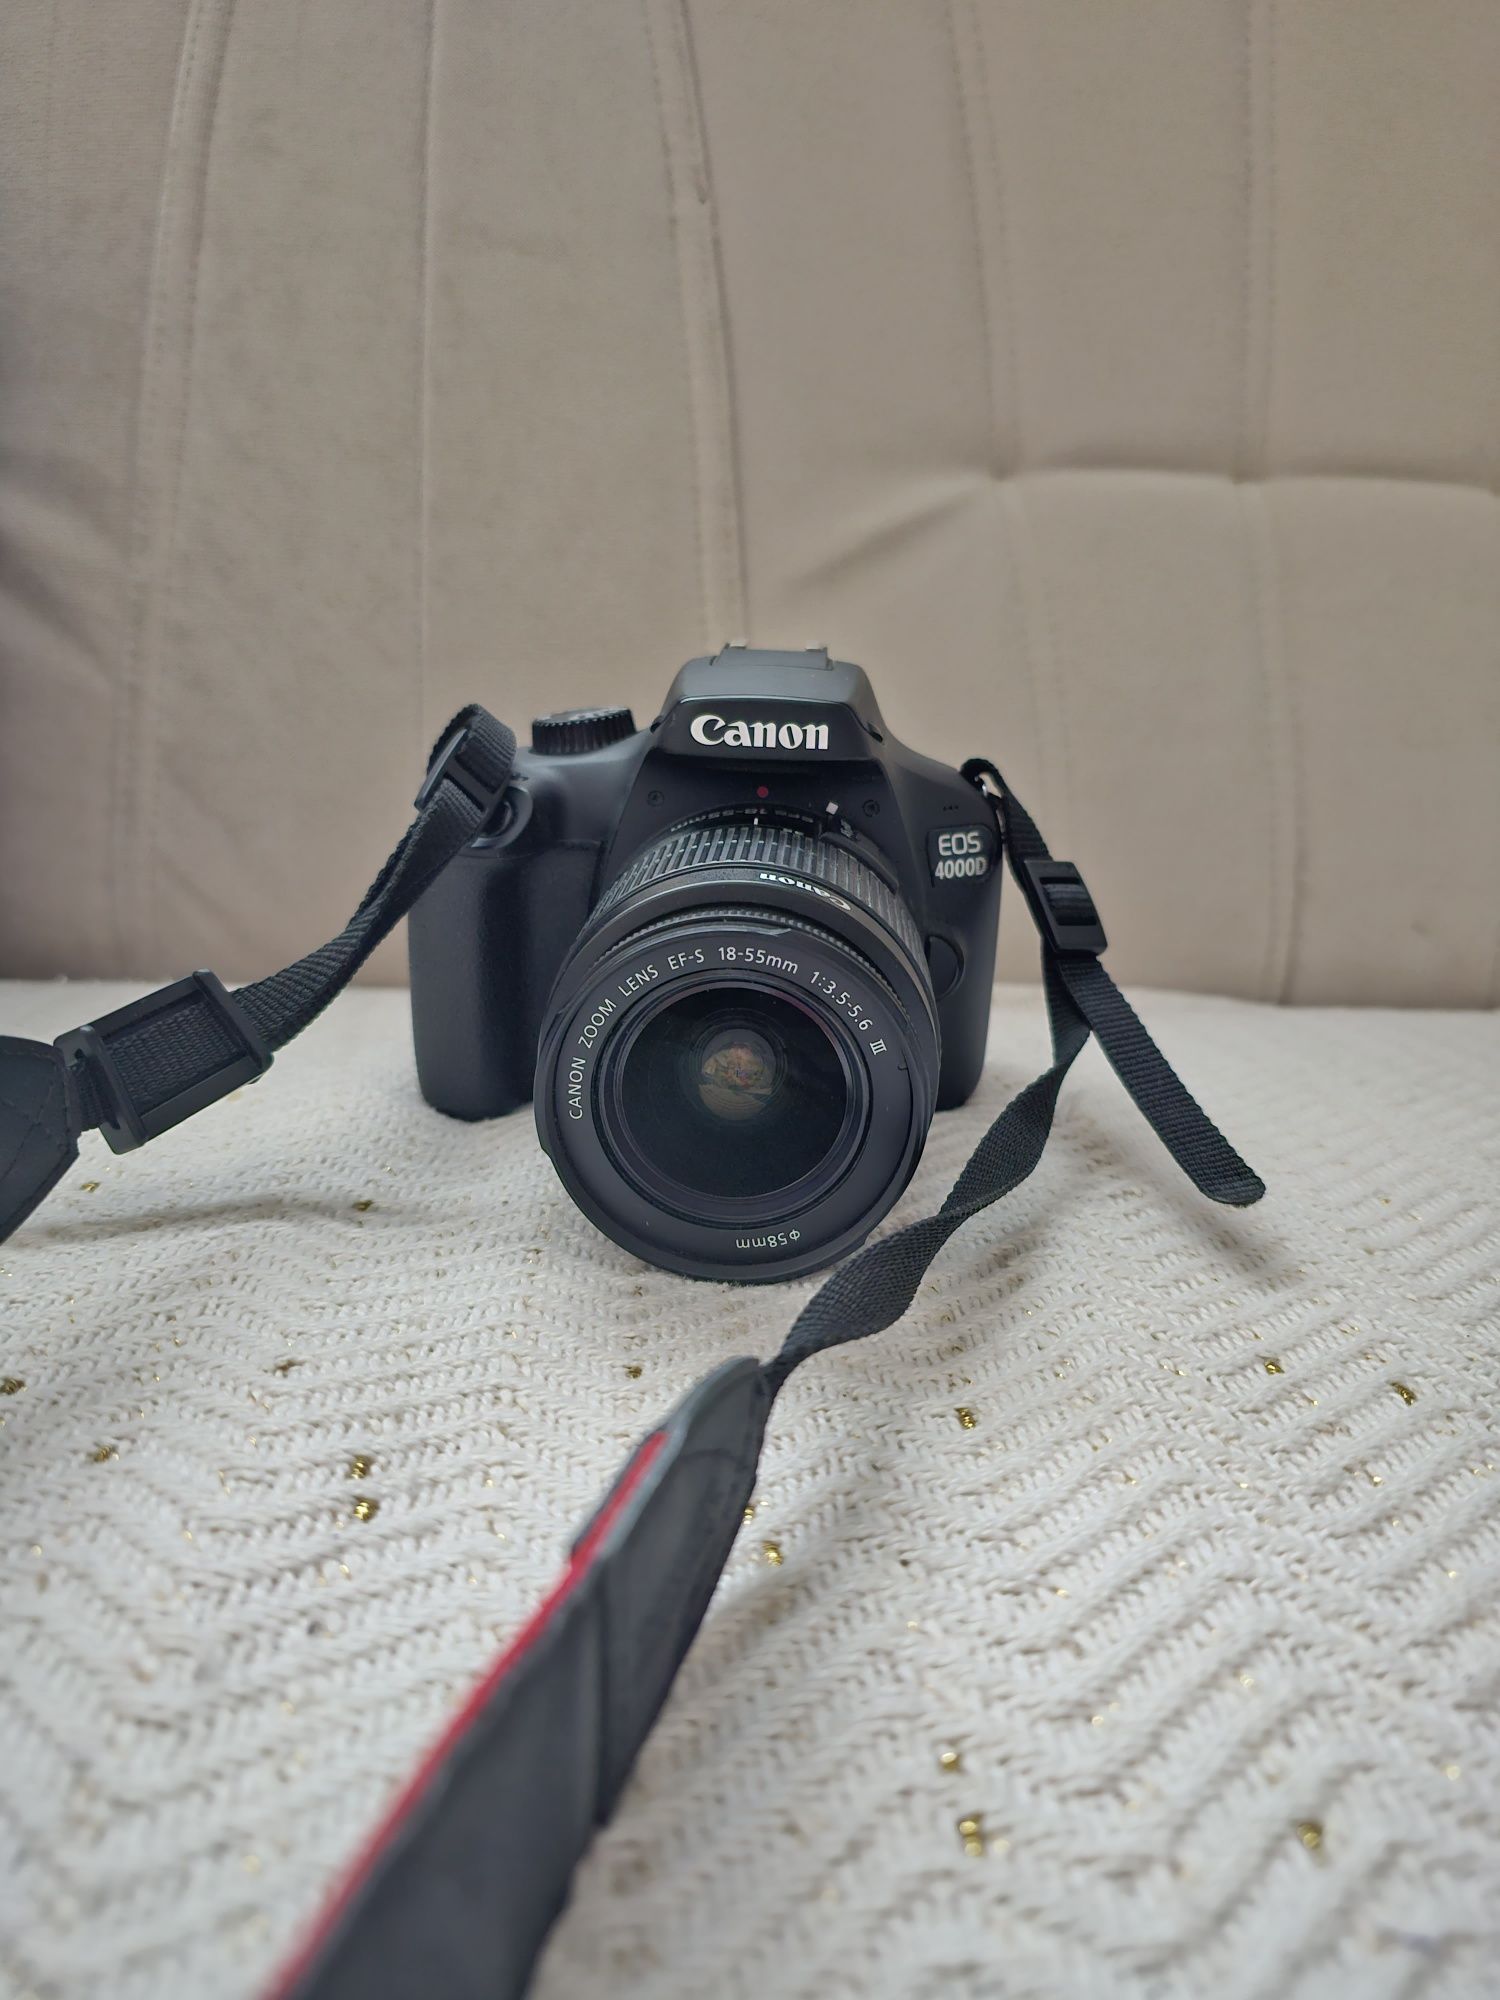 Aparat Canon DS126701 stare impecabila